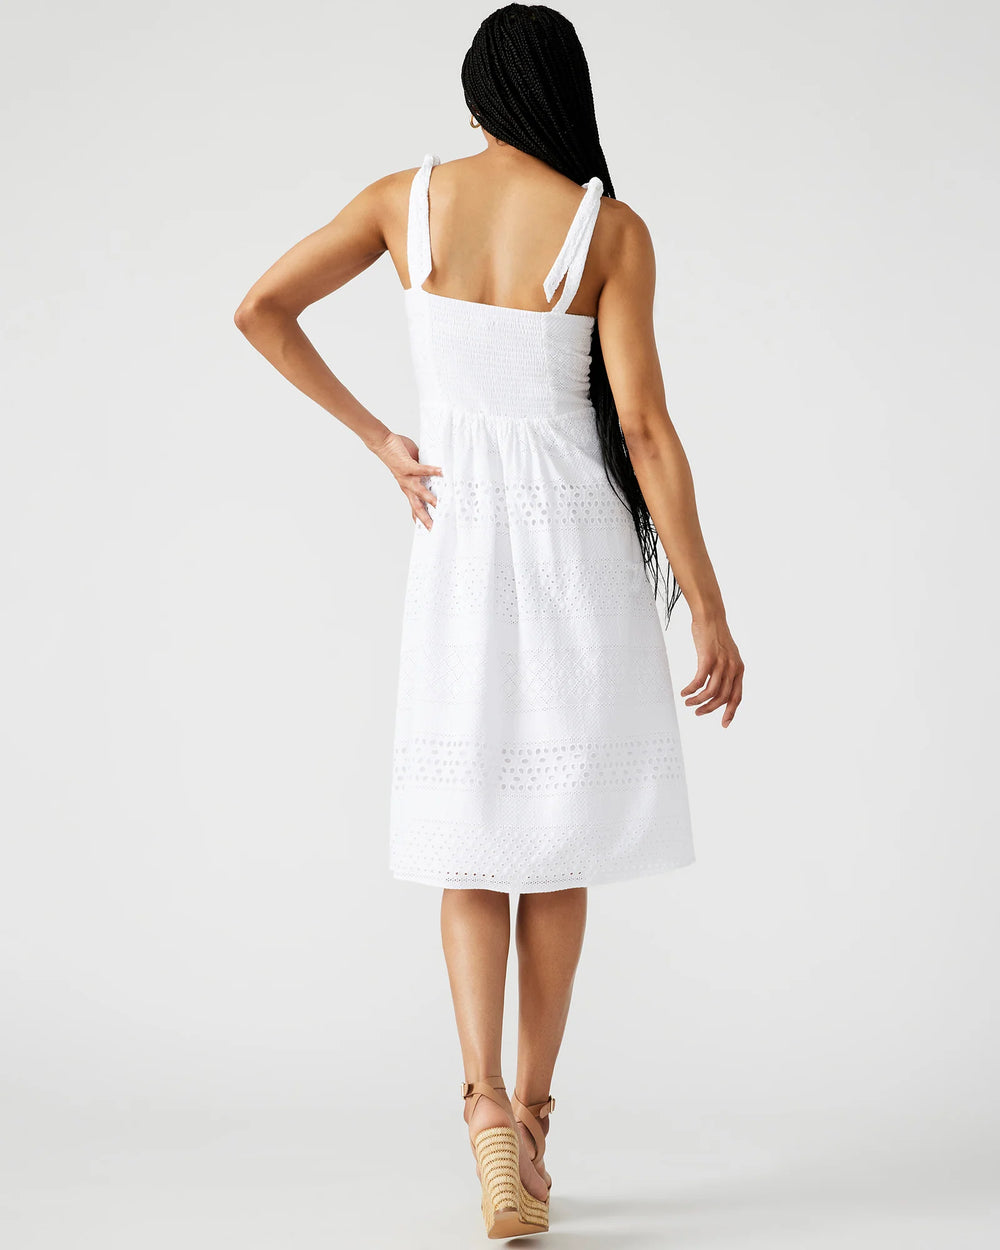 Carlynn Eyelete White Midi Dress